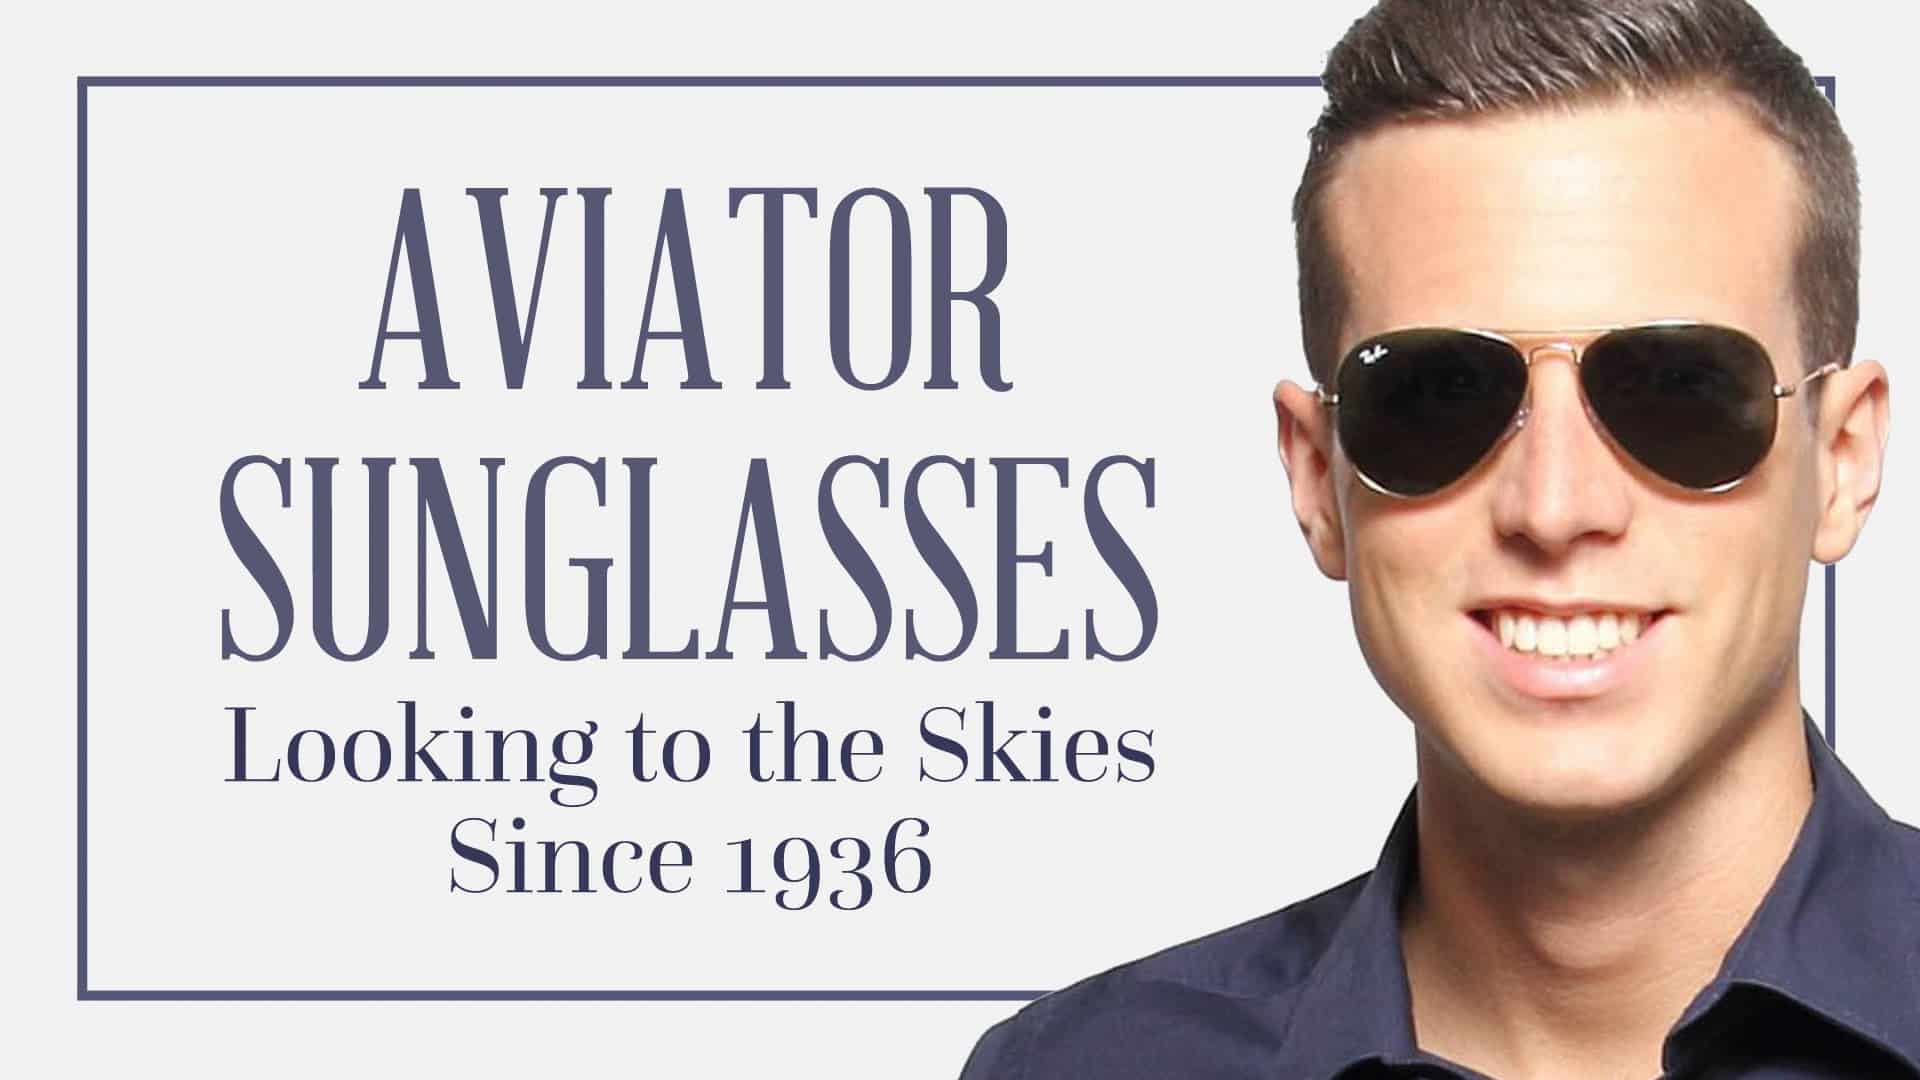 Caravan Aviation Style Sunglasses Classic Vintage Men Women 